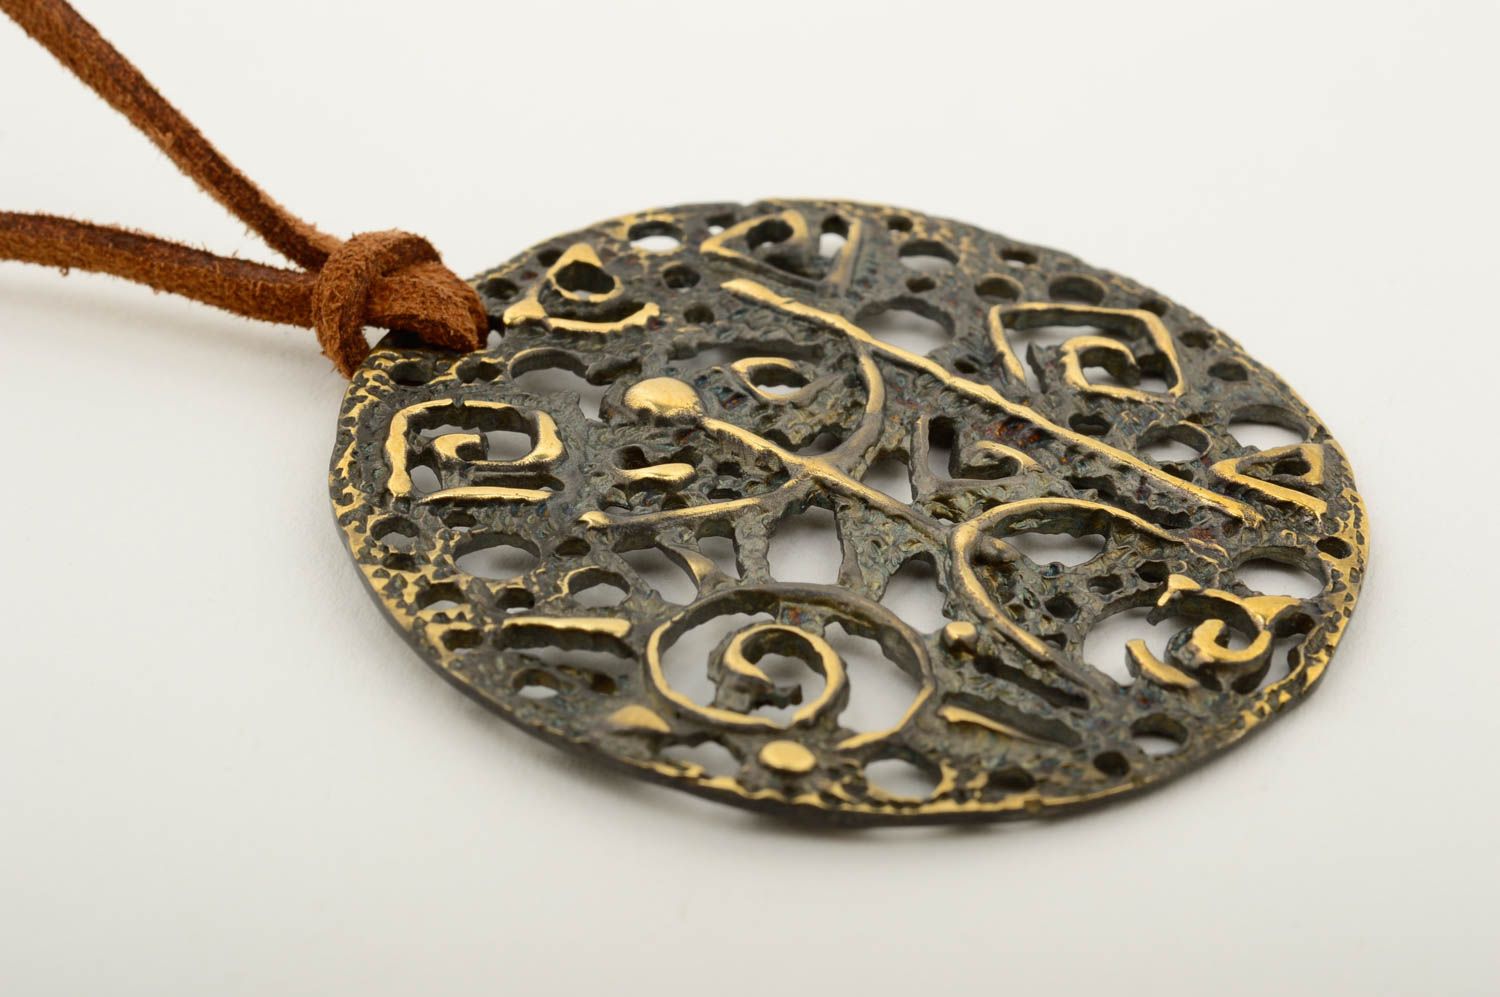 Handmsde copper pendant copper jewelry metal pendant fashion accessories photo 4